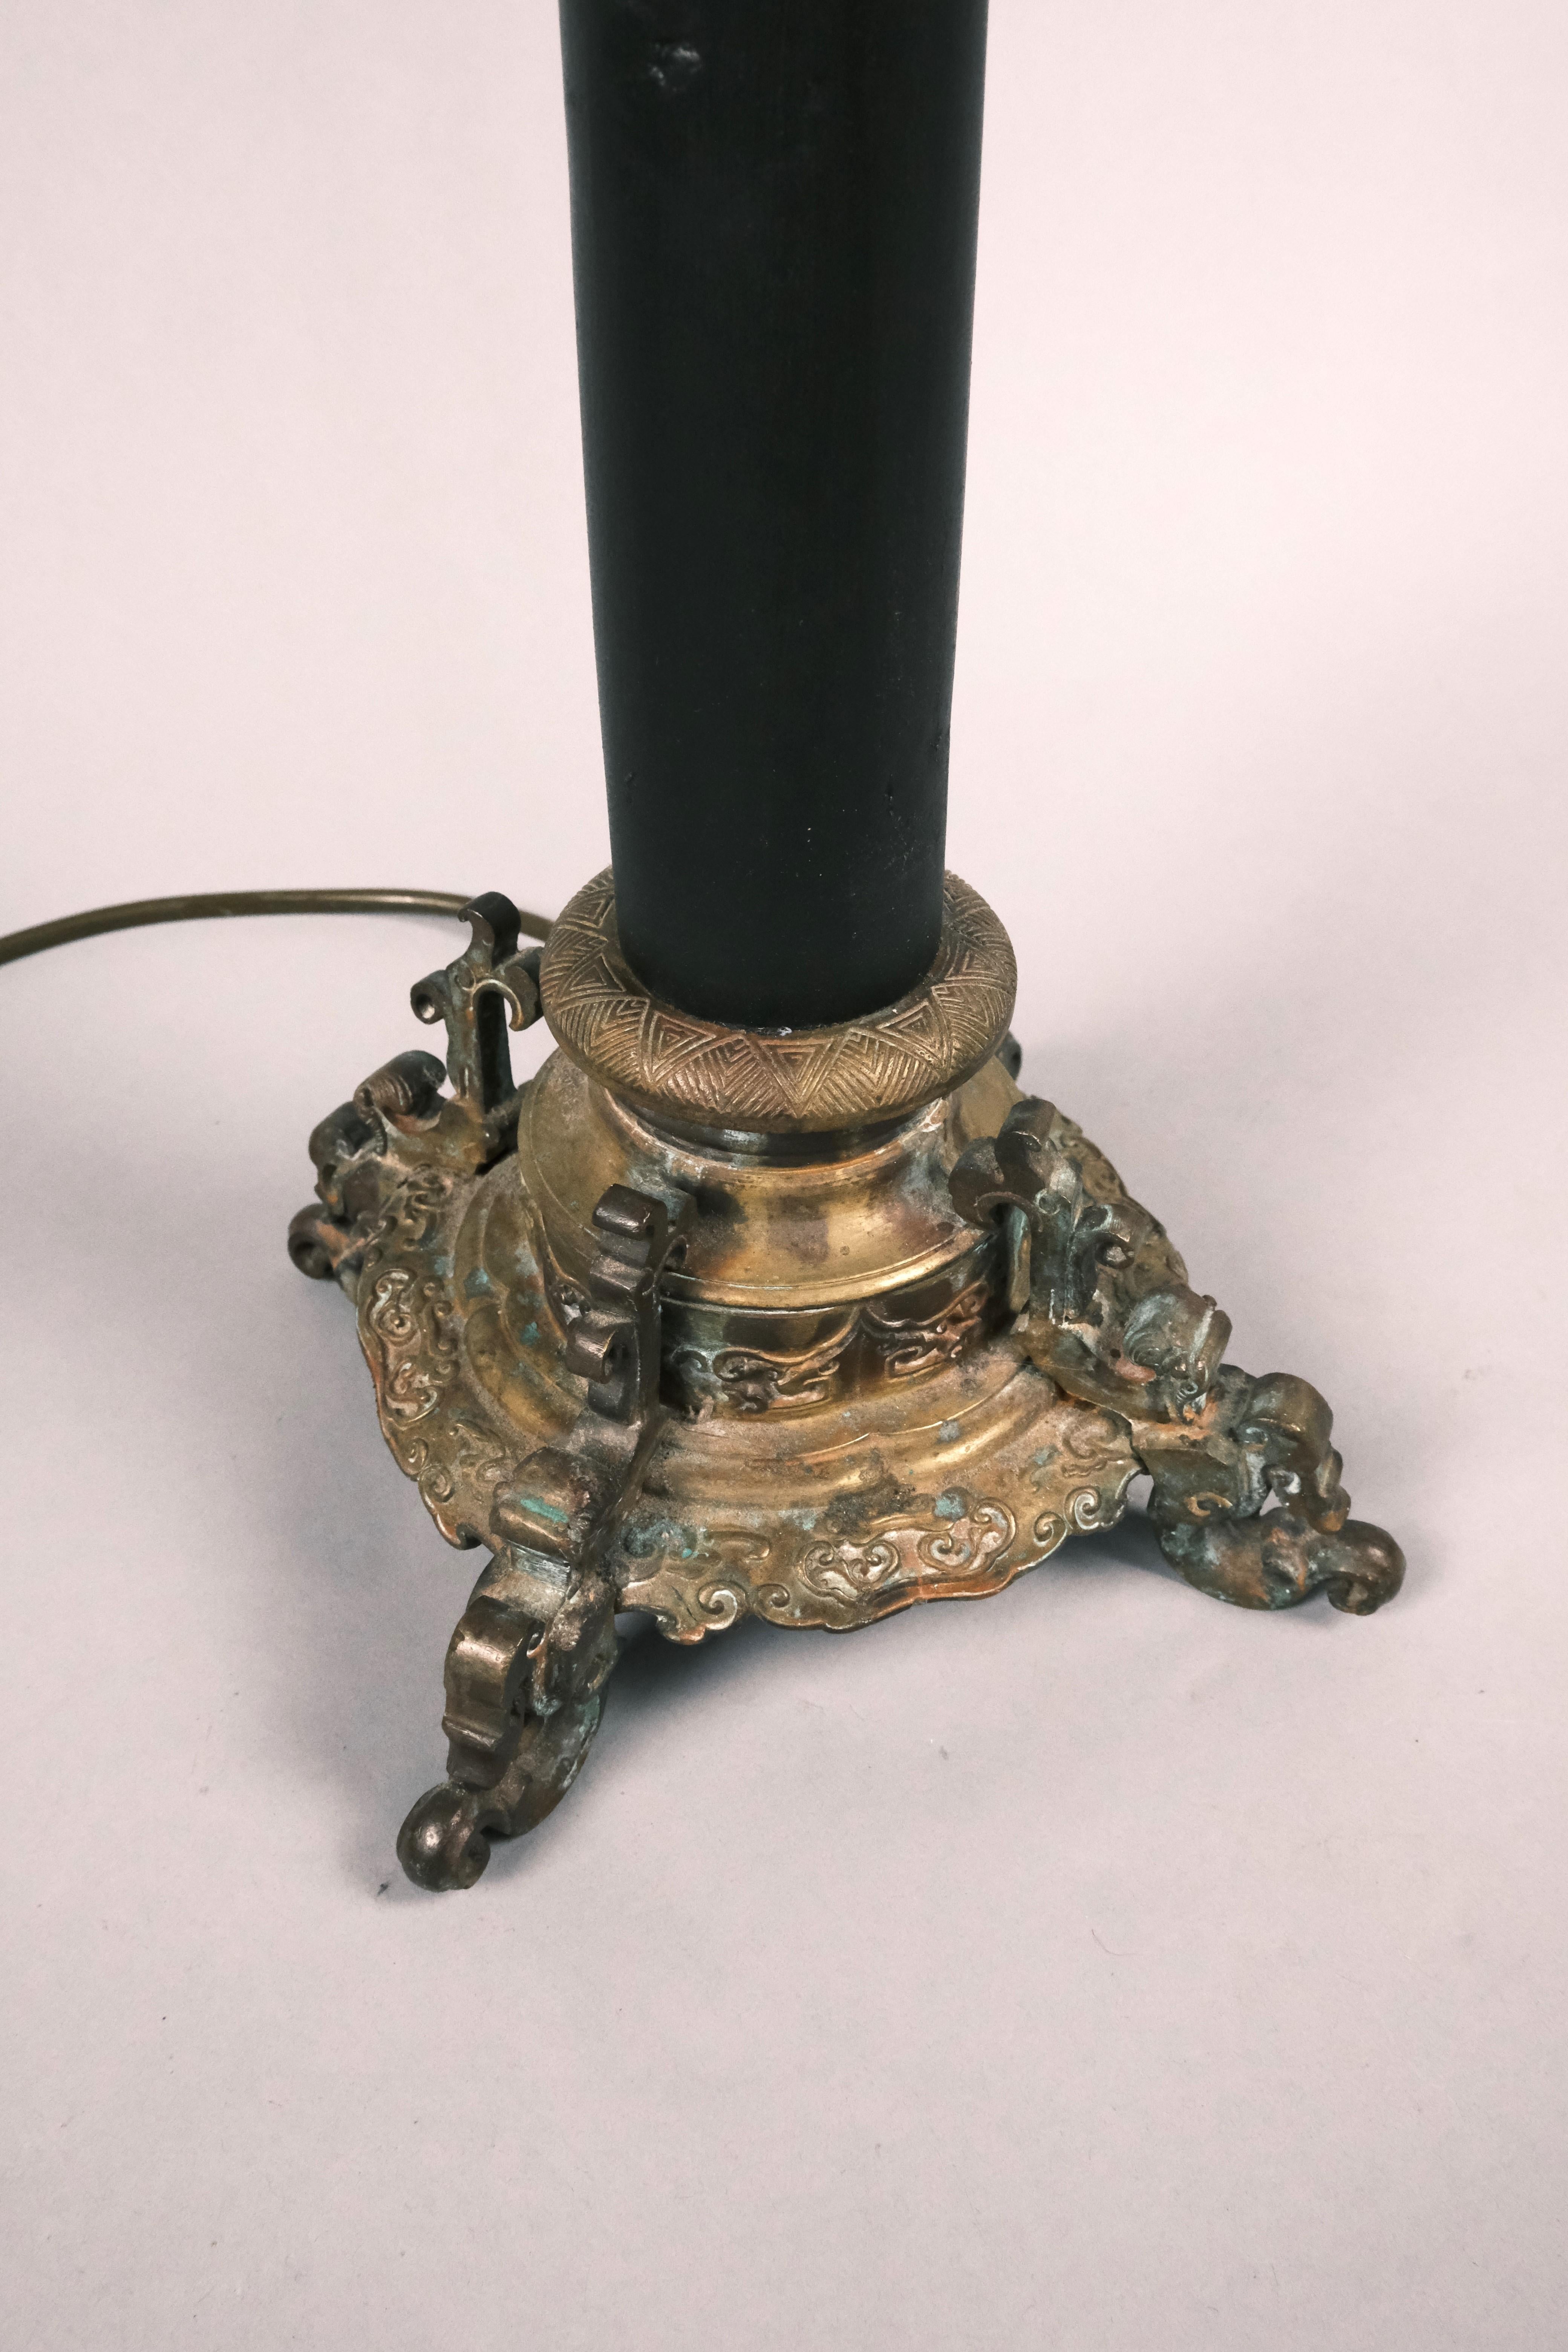 Hutton-Clarke Antiques a le plaisir de présenter une élégante lampe de table antique en bronze de style chinois, habilement convertie à l'électricité pour la commodité moderne. Cette pièce bien proportionnée et substantielle bénéficie d'un moulage